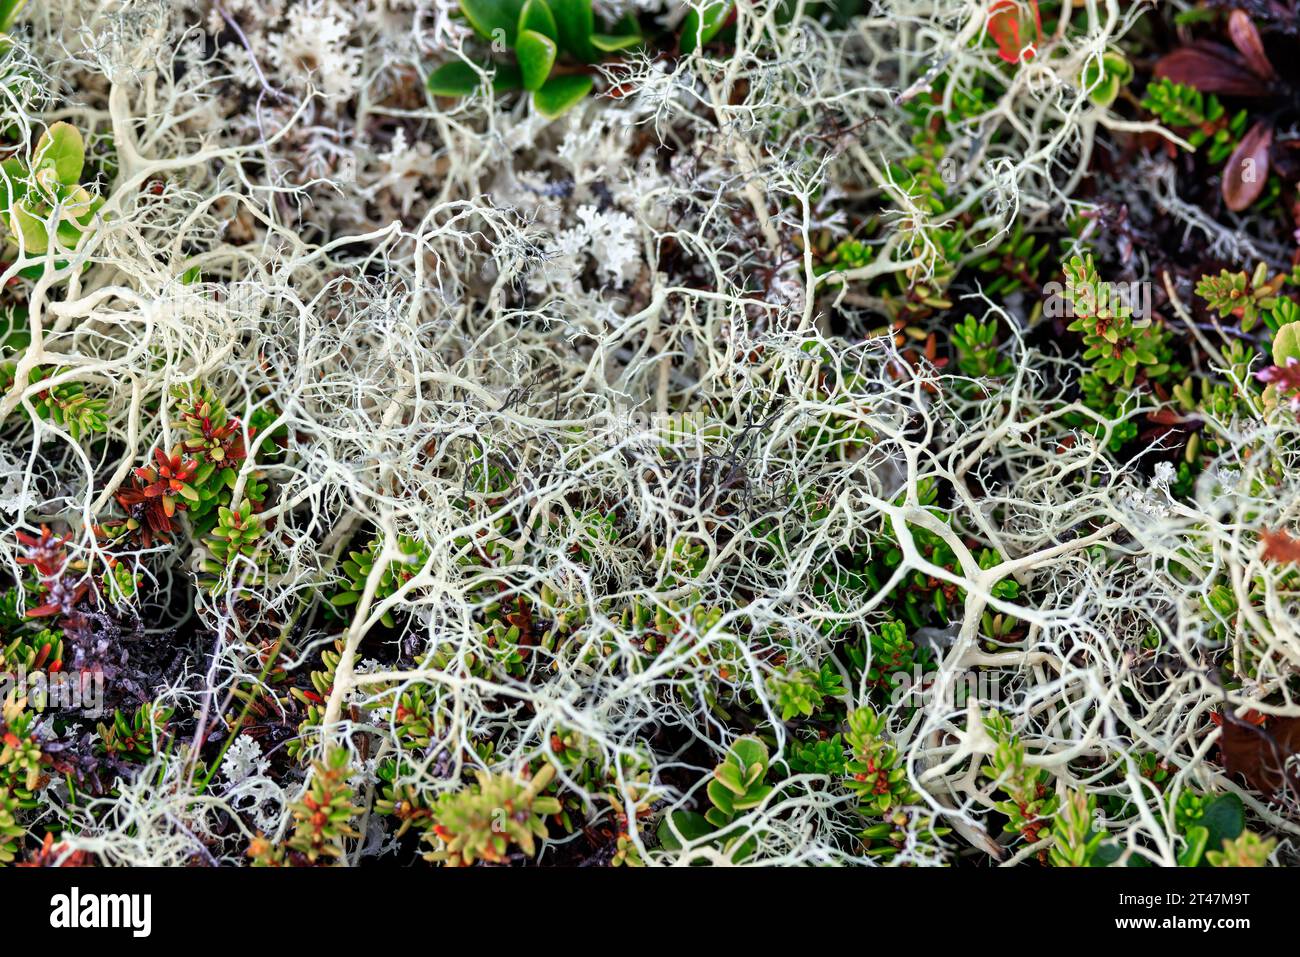 Arctic Tundra lichen Moss primo piano. Si trova principalmente nelle zone della Tundra artica, la tundra alpina, ed è estremamente resistente al freddo. Cladonia rangiferina, anche k Foto Stock